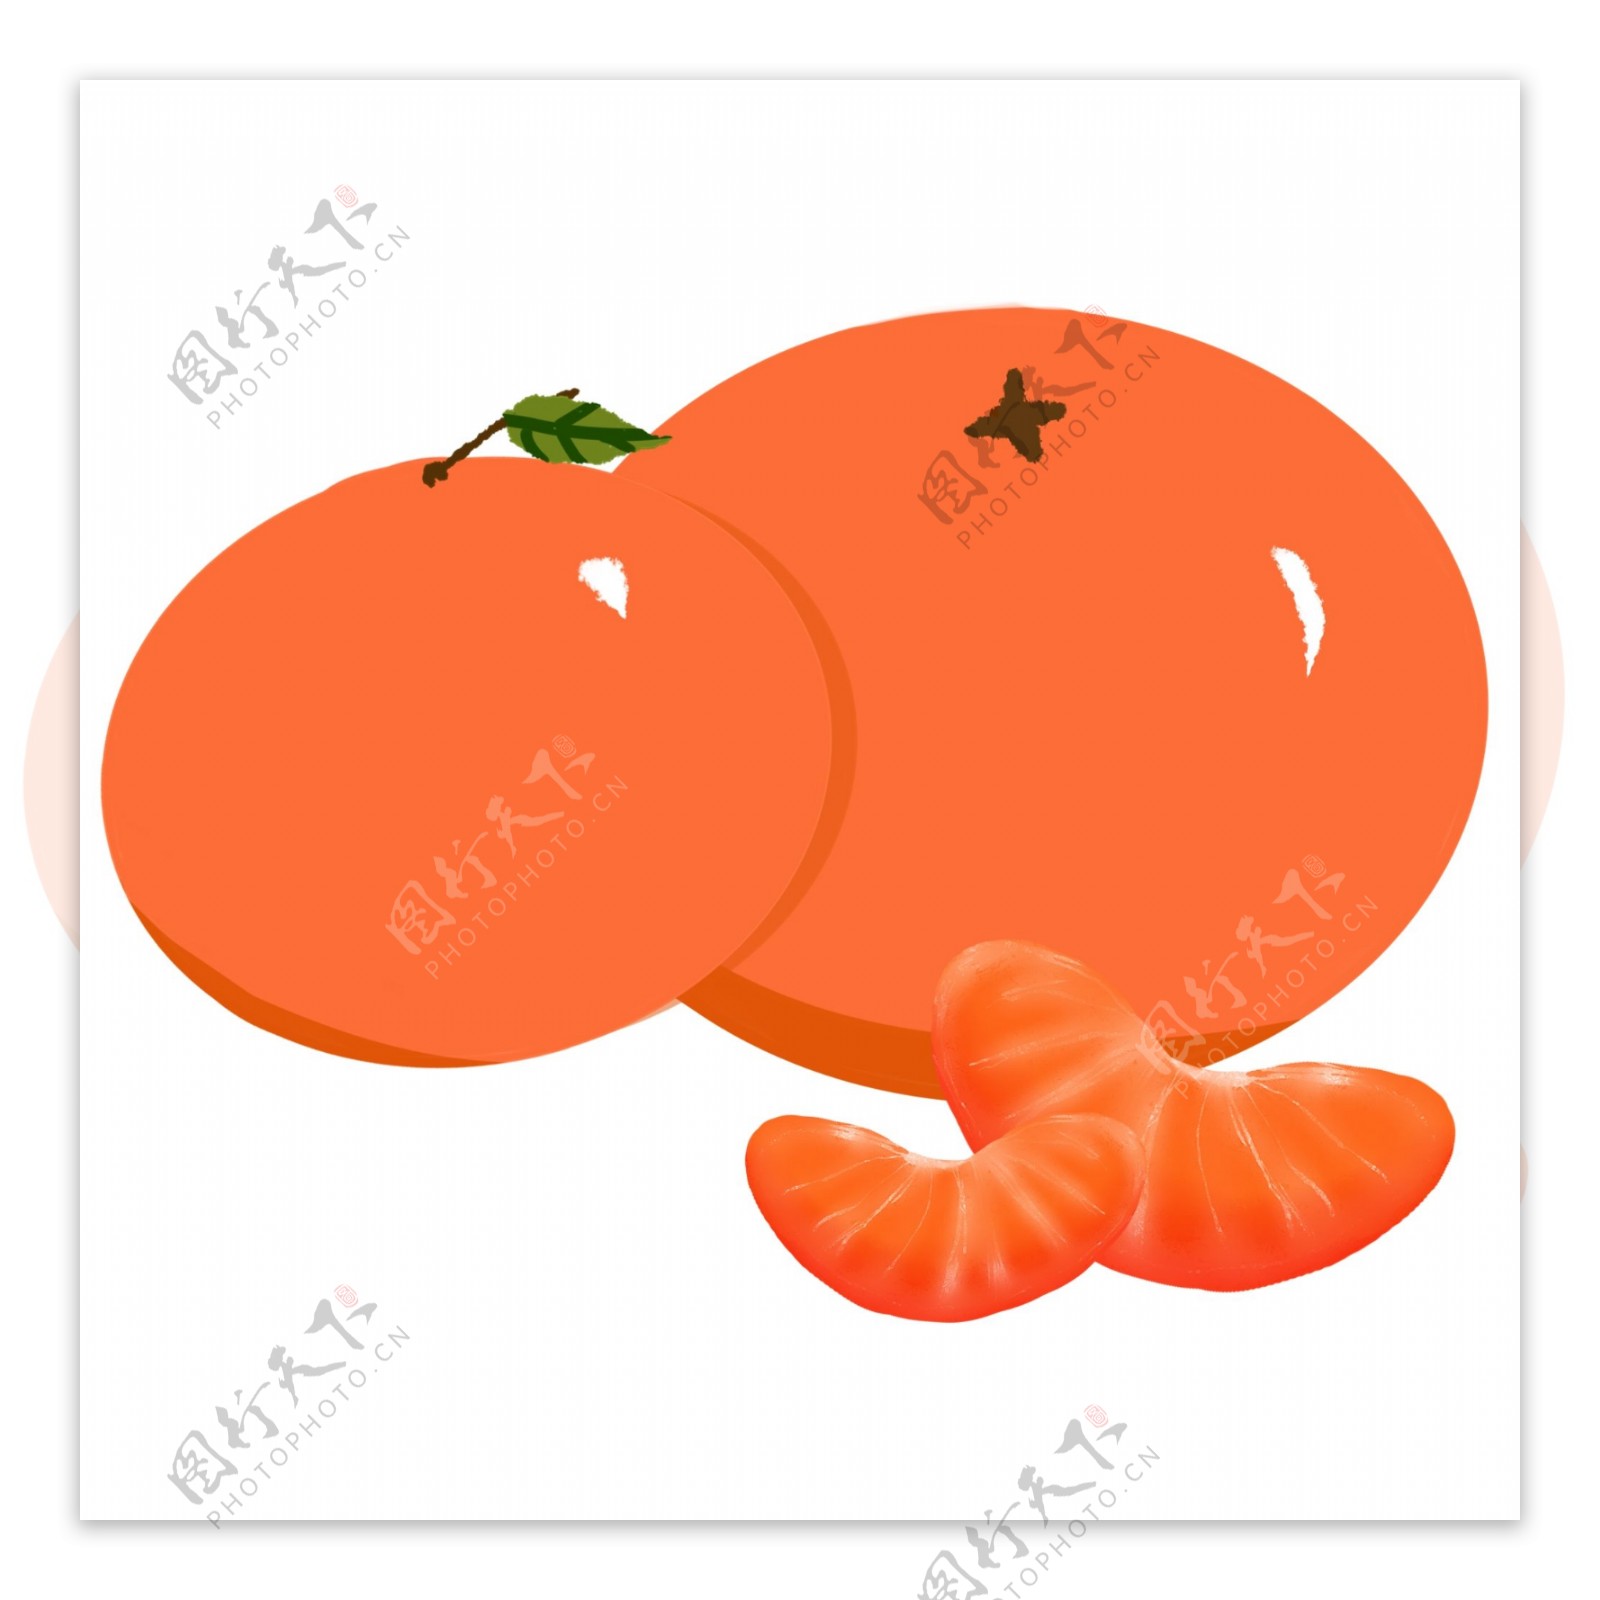 橙色橘子水果插图